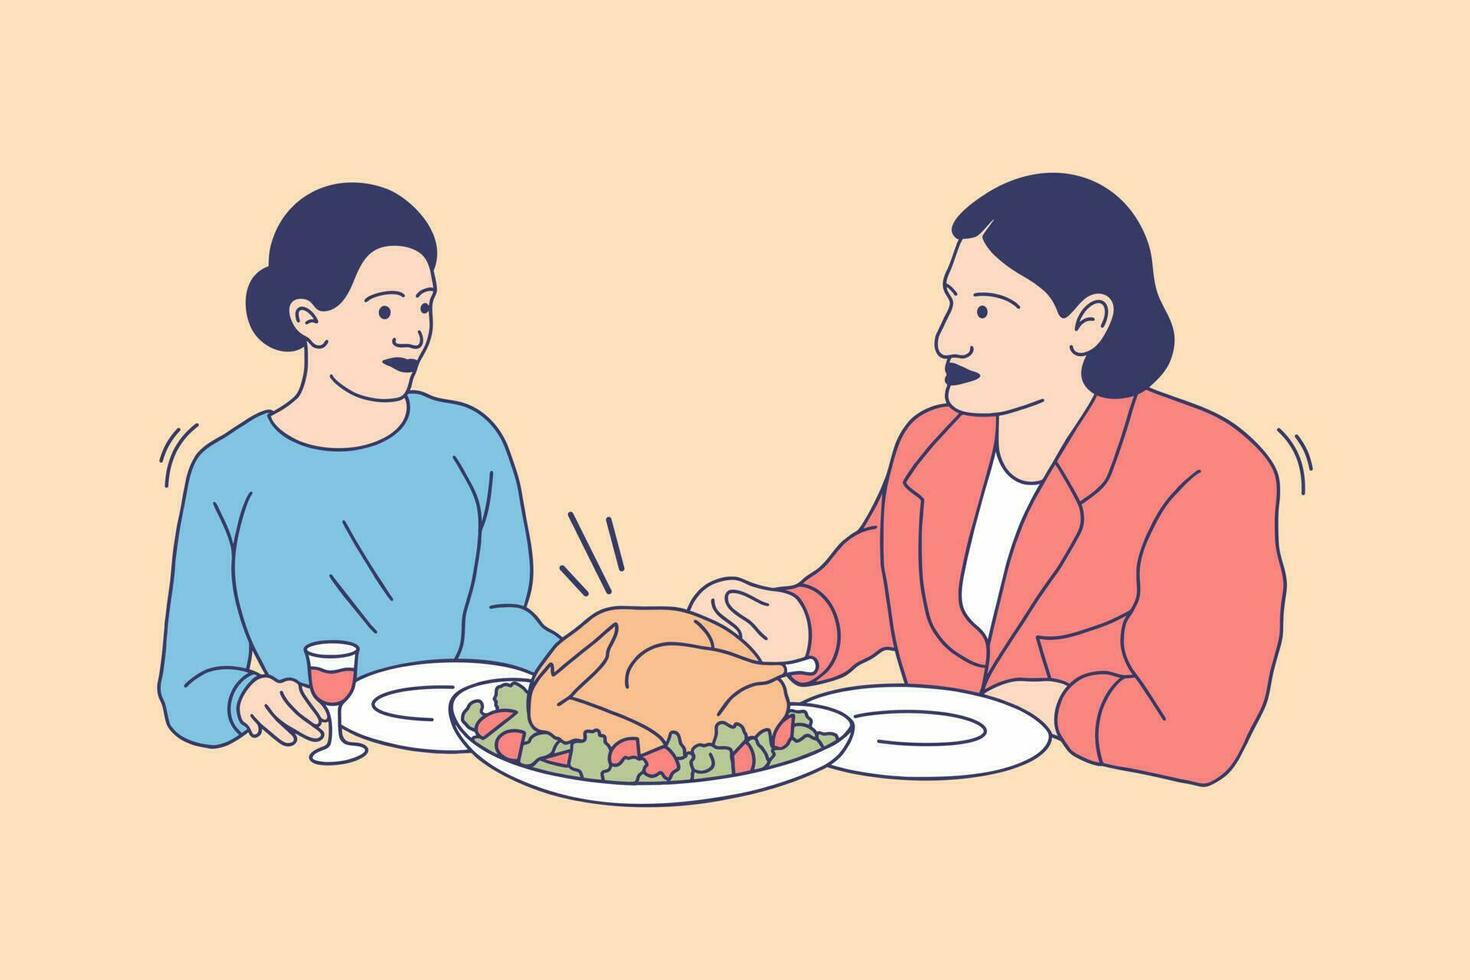 illustrazioni di contento famiglia mangiare tacchino per ringraziamento giorno design concetto vettore